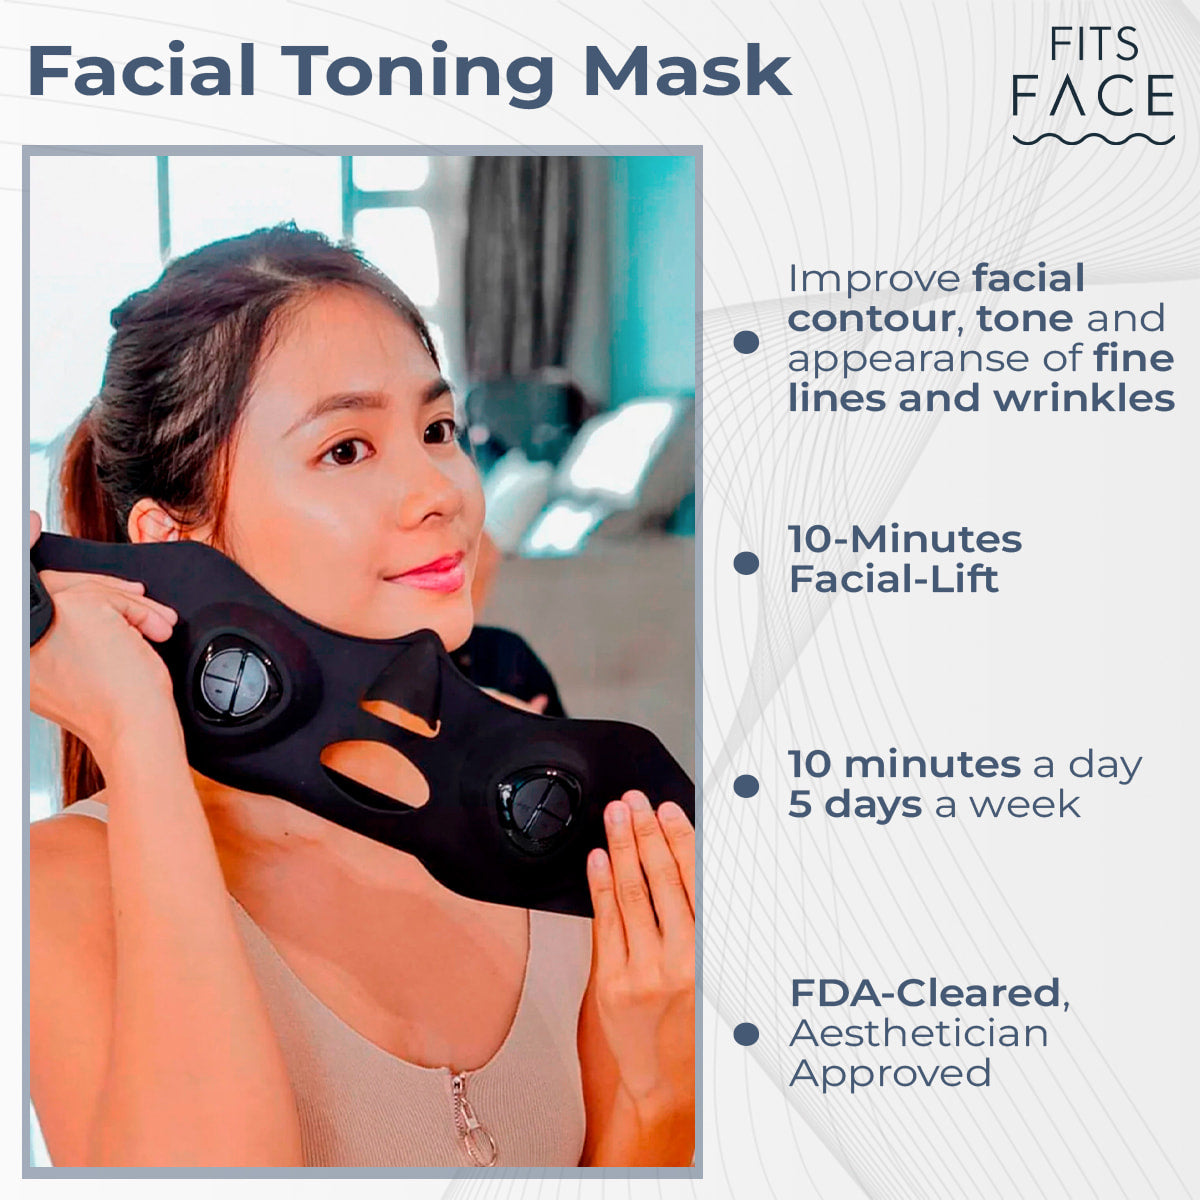 fitsface-ems-mask-medilift-medi lift-yaman-emsmask-lifting-face yoga-1